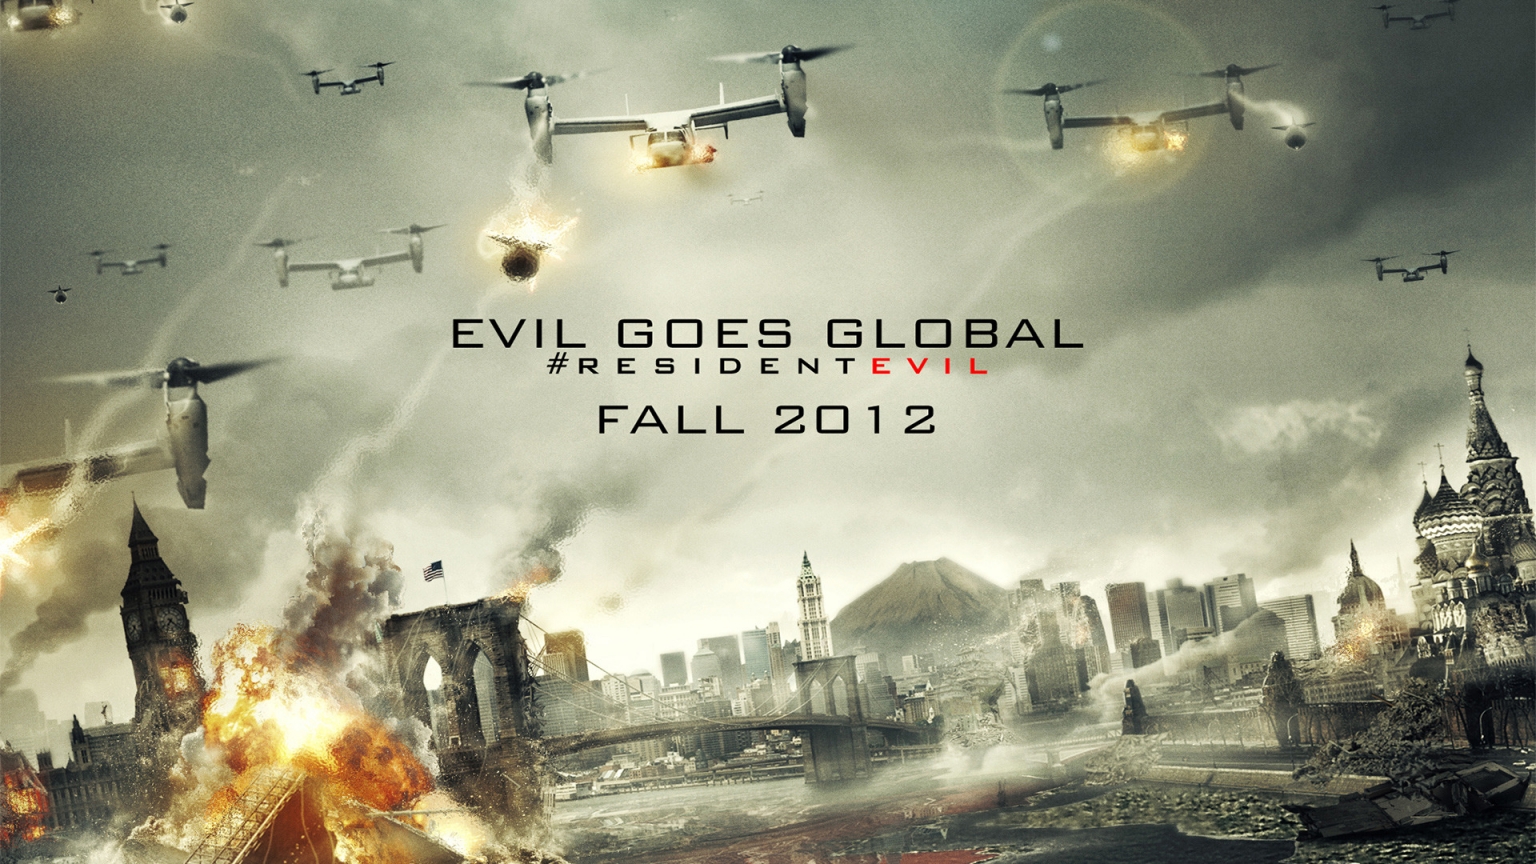 Resident Evil 2012 for 1536 x 864 HDTV resolution